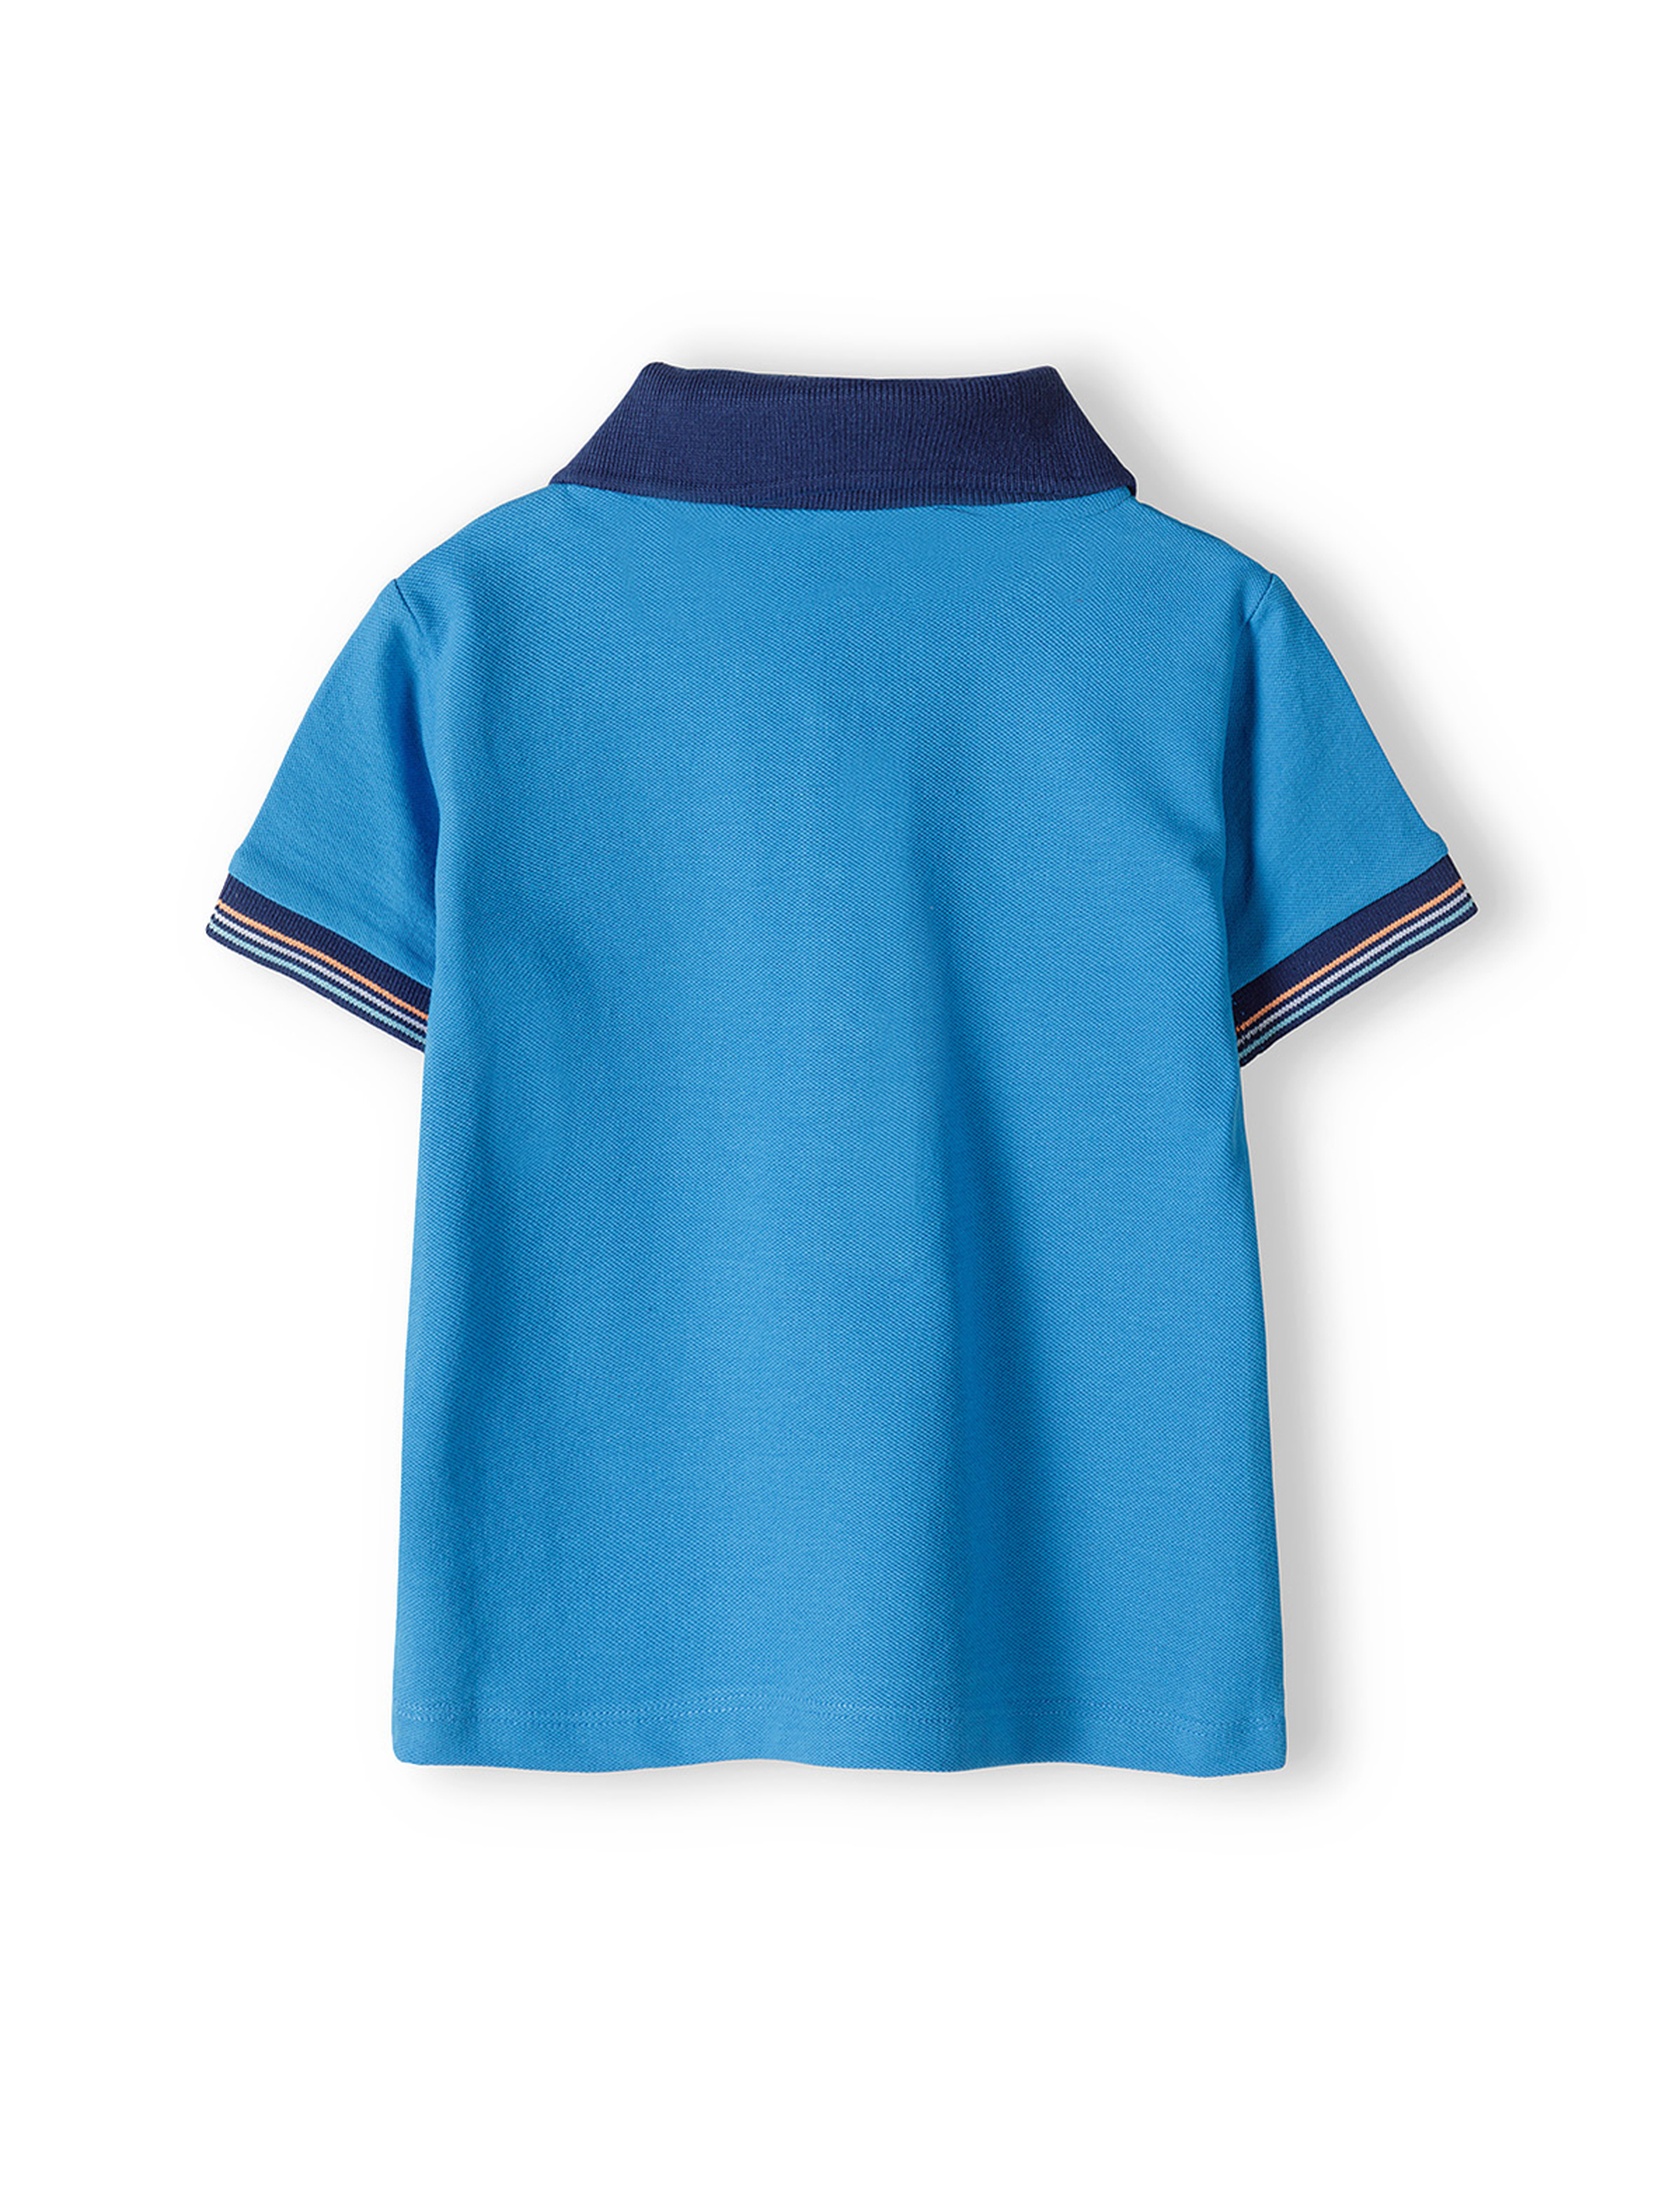 Komplet dla niemowlaka- niebieska bluzka polo + granatowe szorty